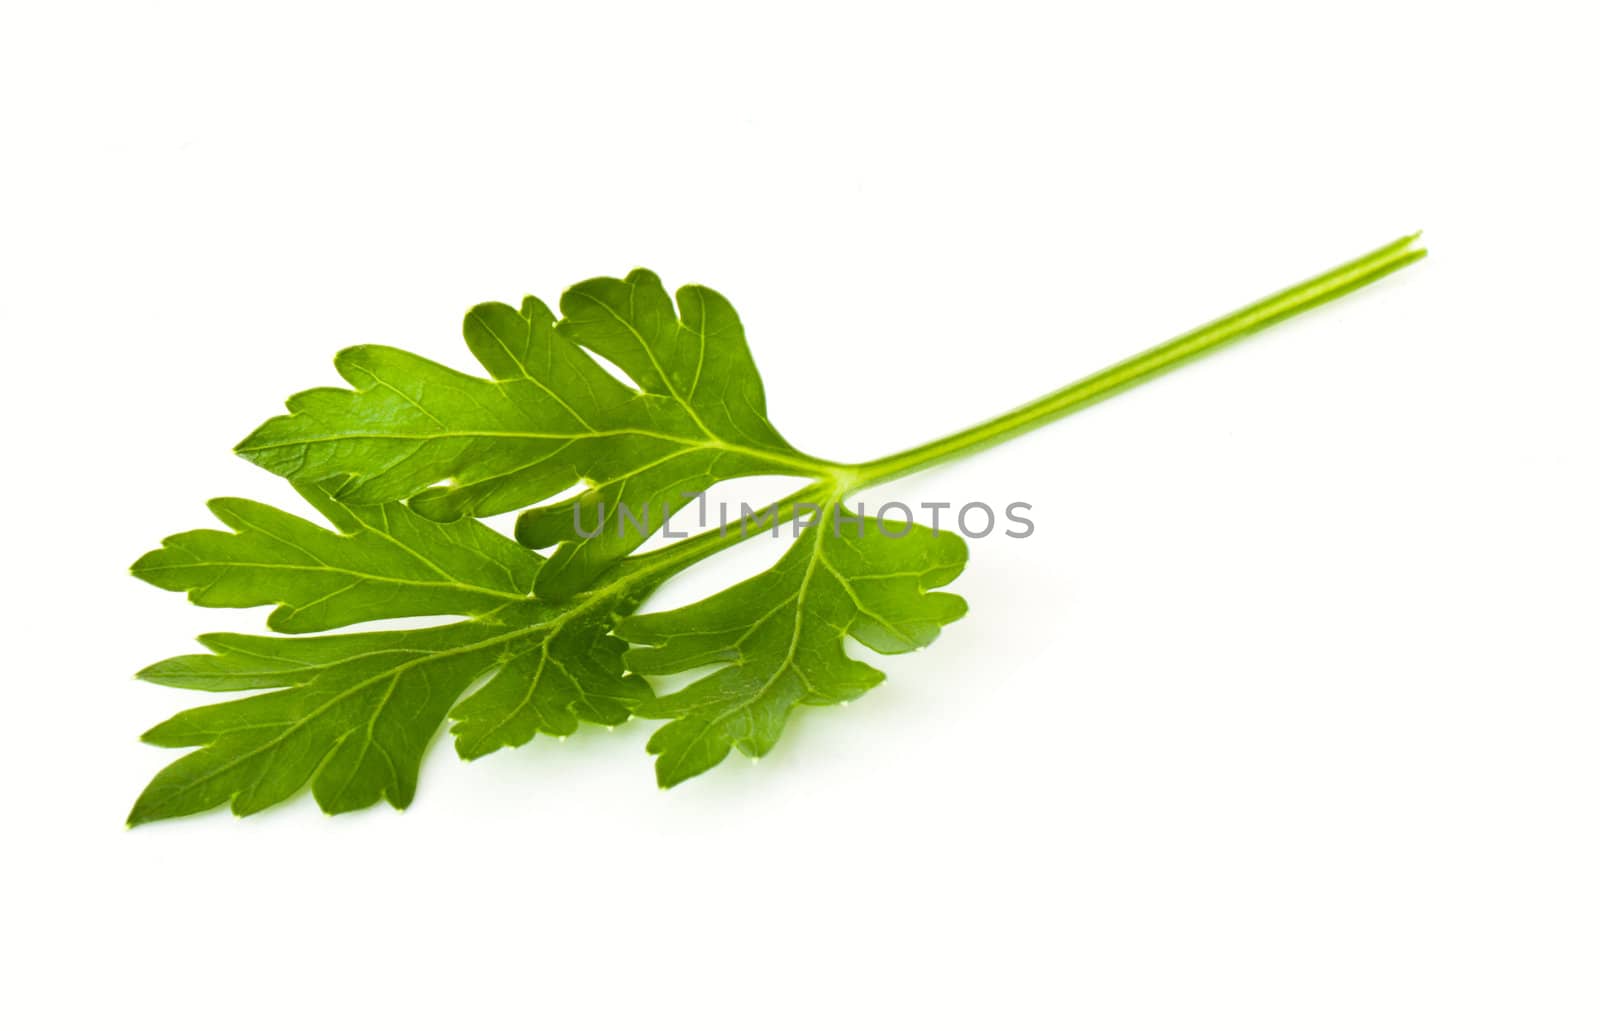 Leaves of parsley by vtorous